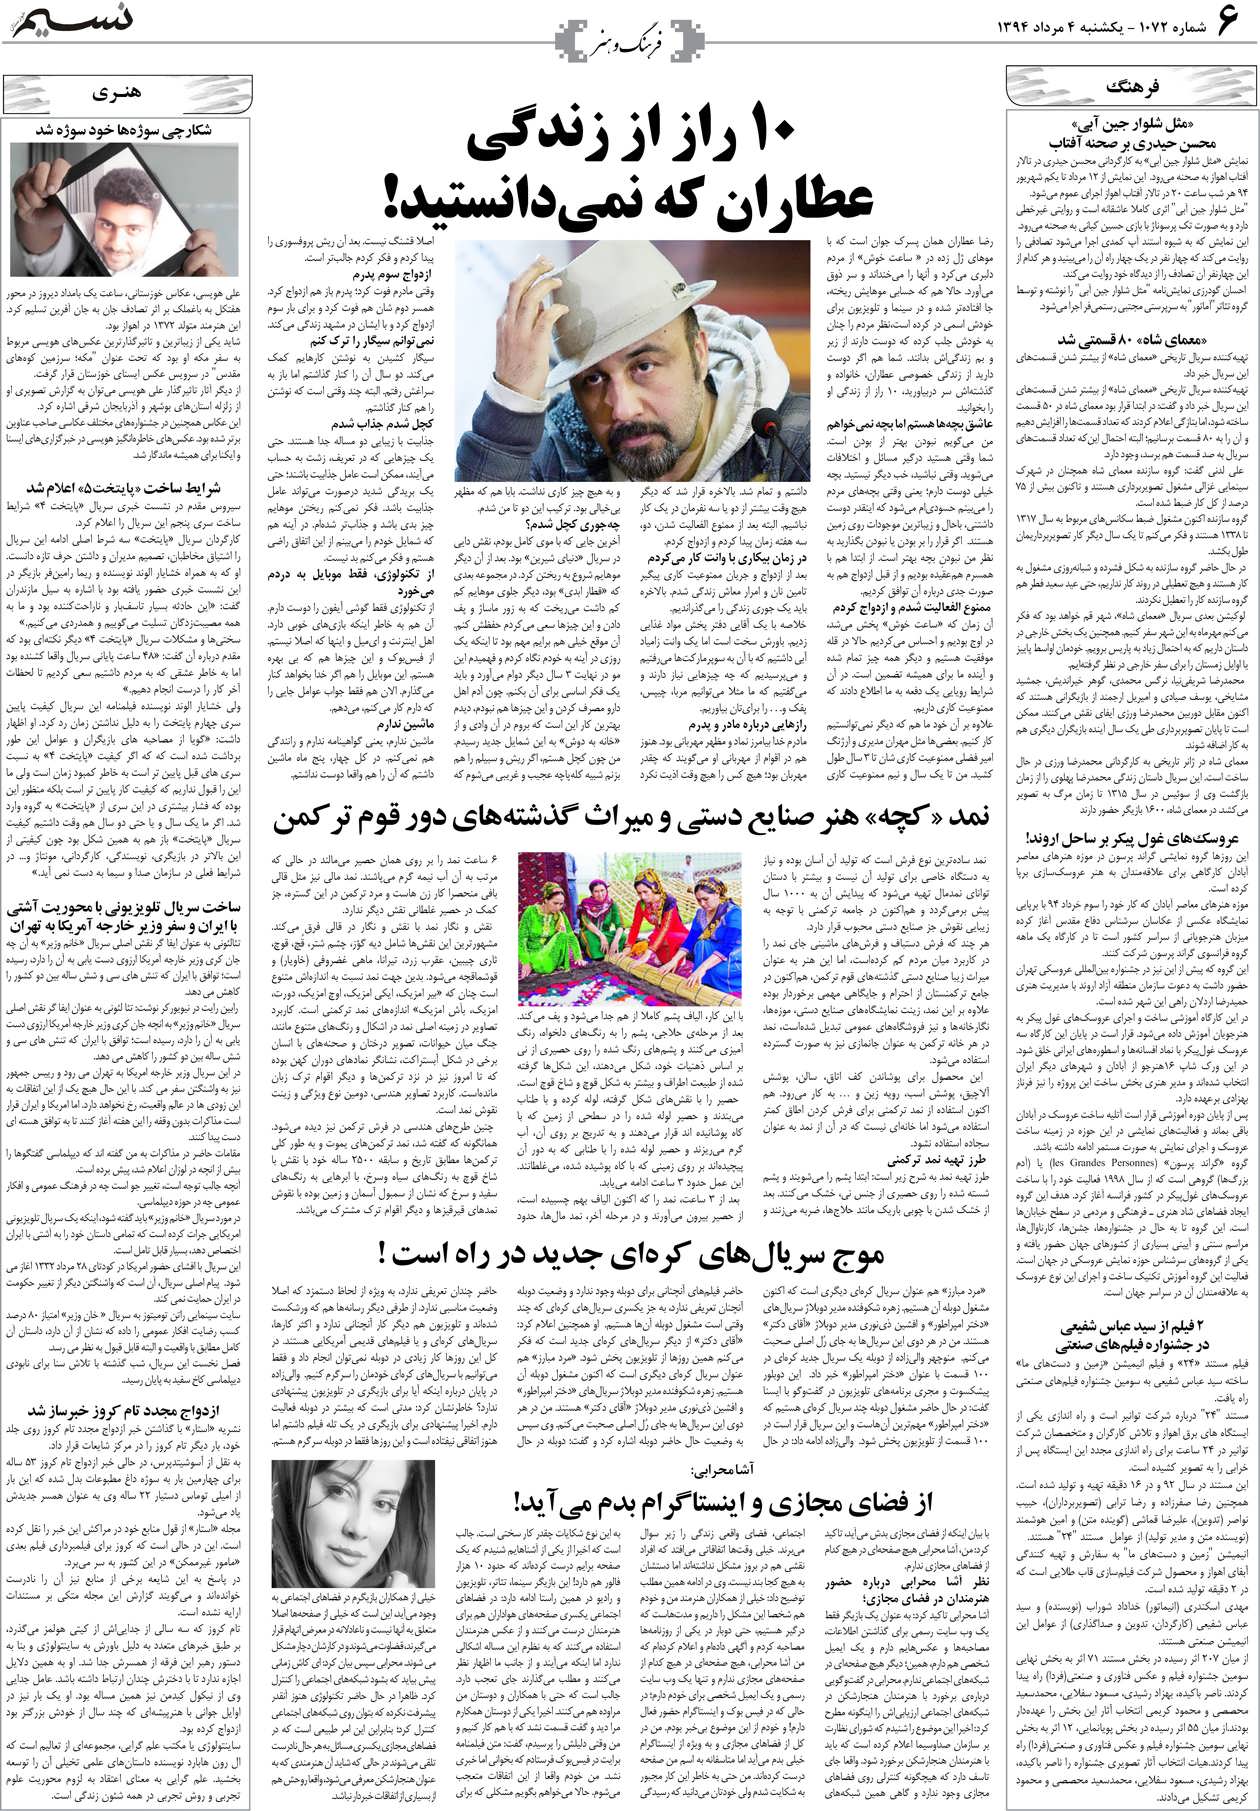 صفحه فرهنگ و هنر روزنامه نسیم شماره 1072